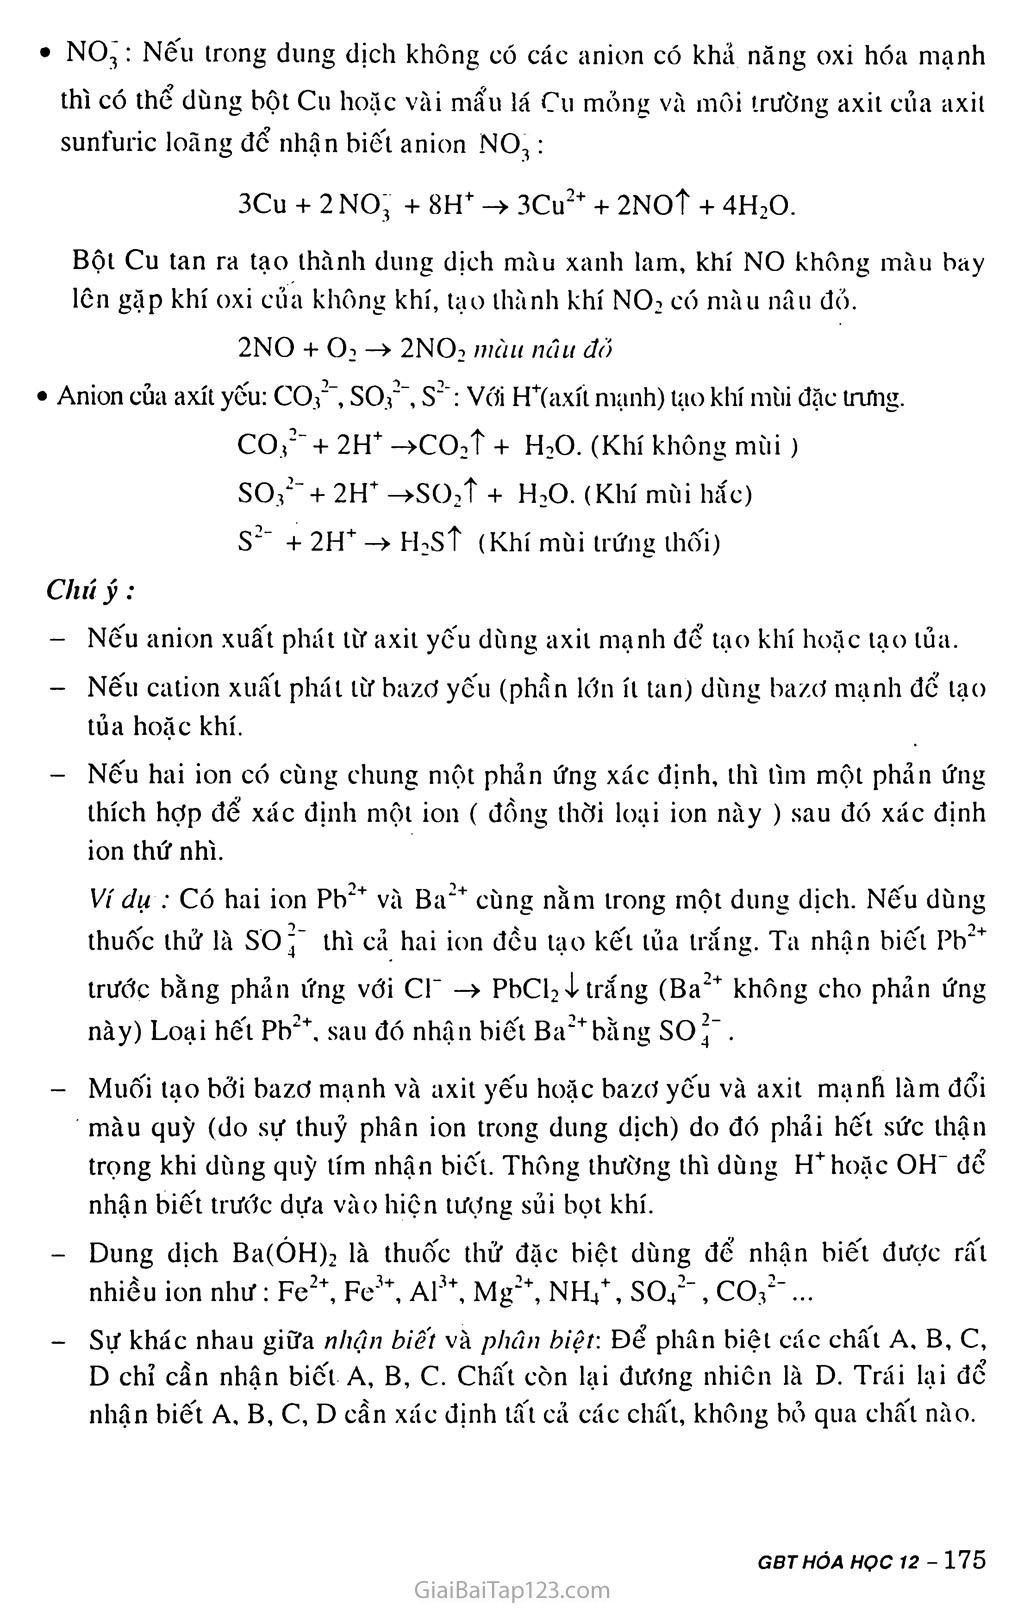 Bài 40: Nhận biết một số ion trong dunng dịch trang 3